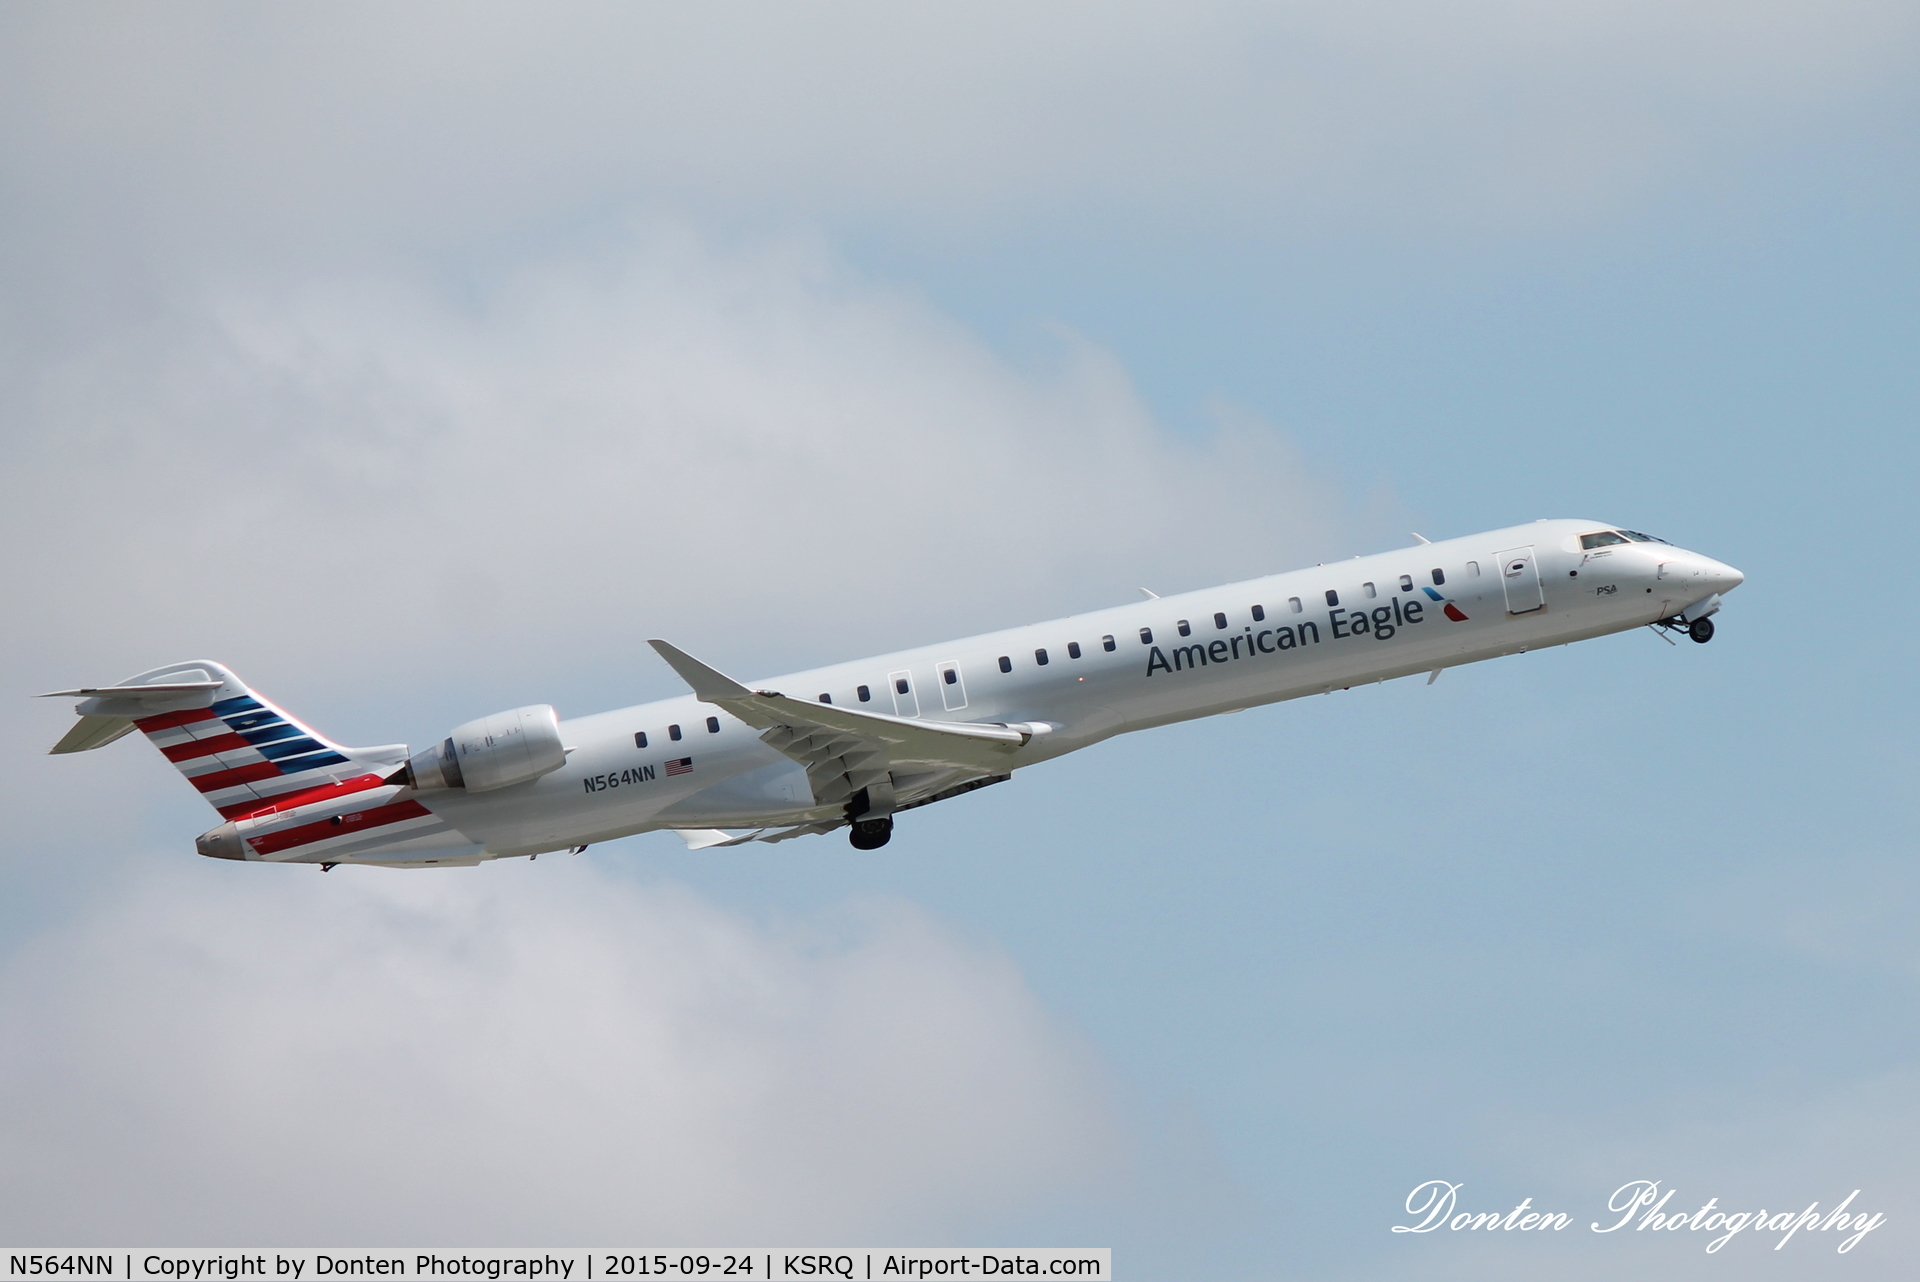 N564NN, 2015 Bombardier CRJ-900 (CL-600-2D24) C/N 15351, American Flight 5139 (N564NN) departs Sarasota-Bradenton International Airport enroute to Charlotte/Douglas International Airport